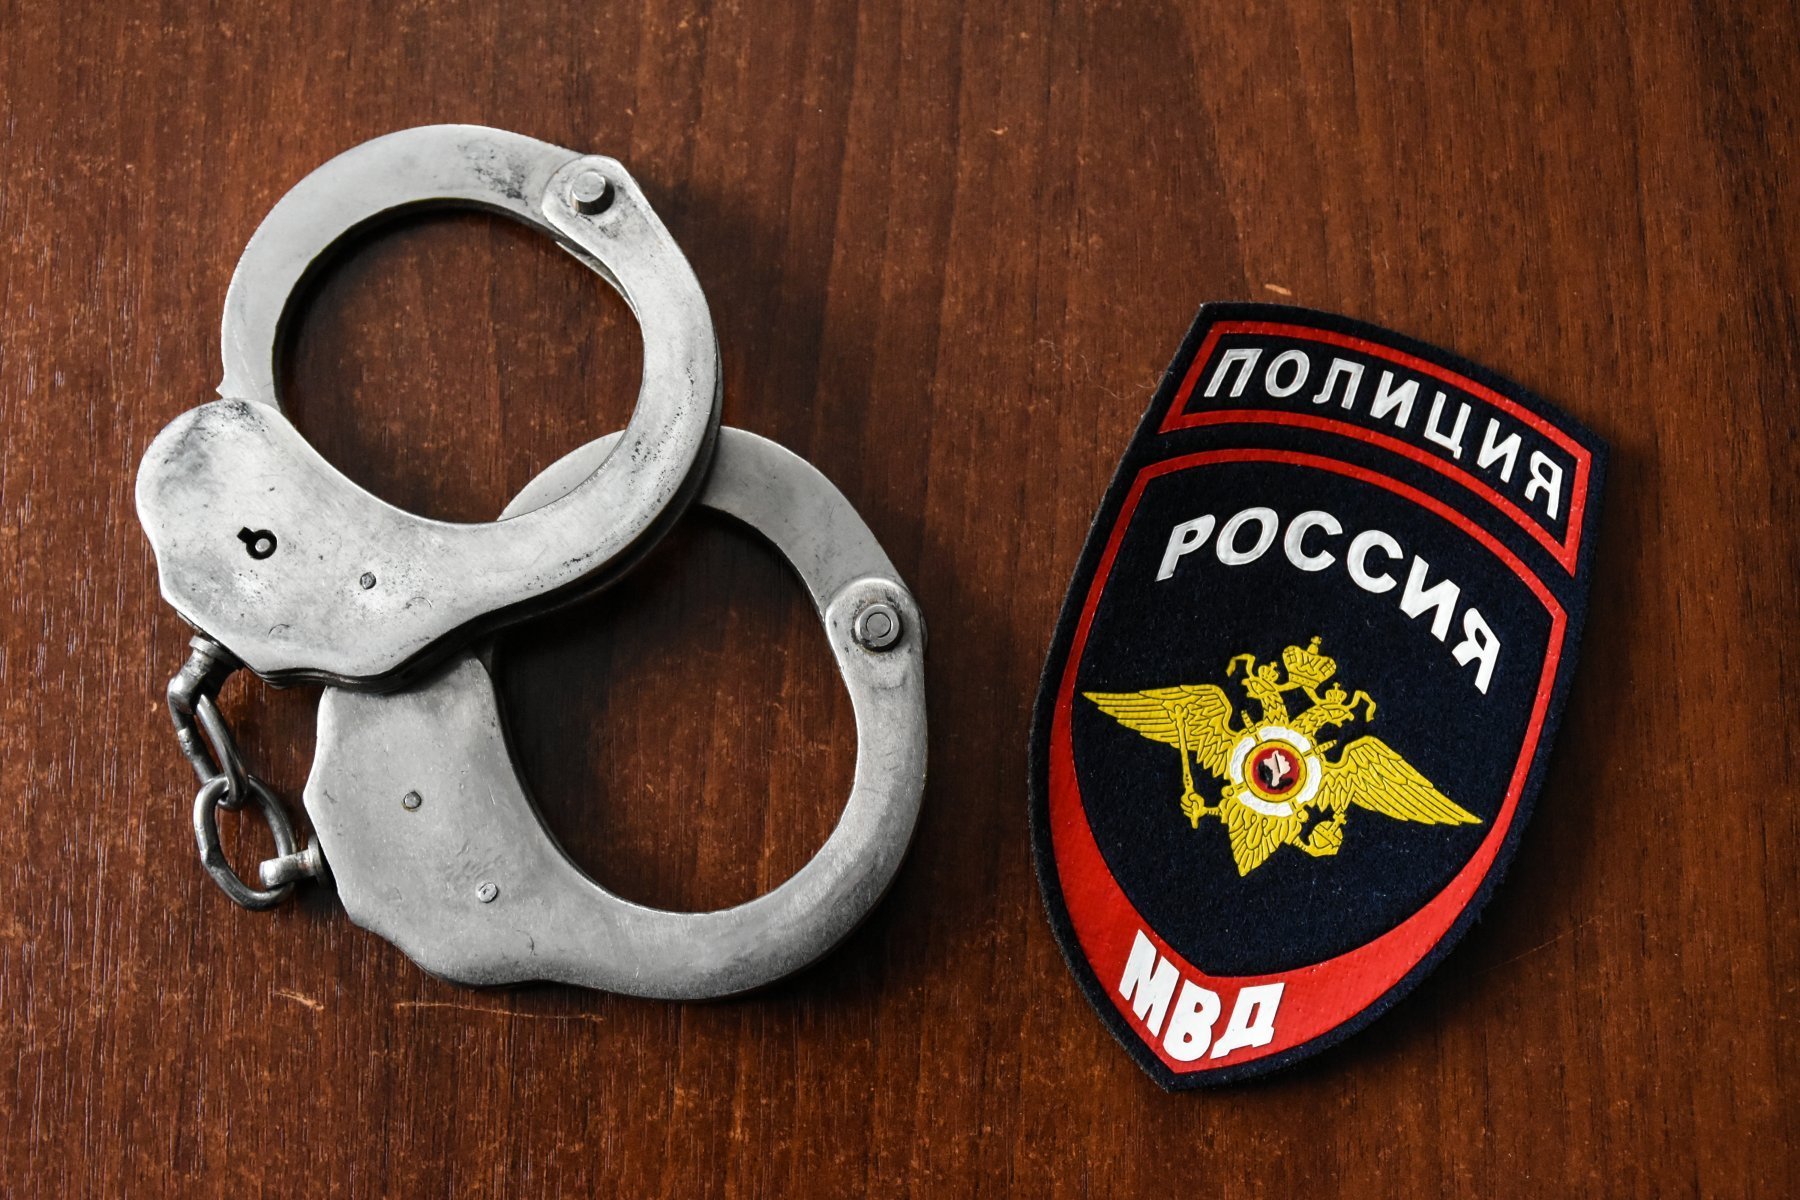 В Подольске задержана обманувшая предпринимательницу на 300 тыс рублей гадалка